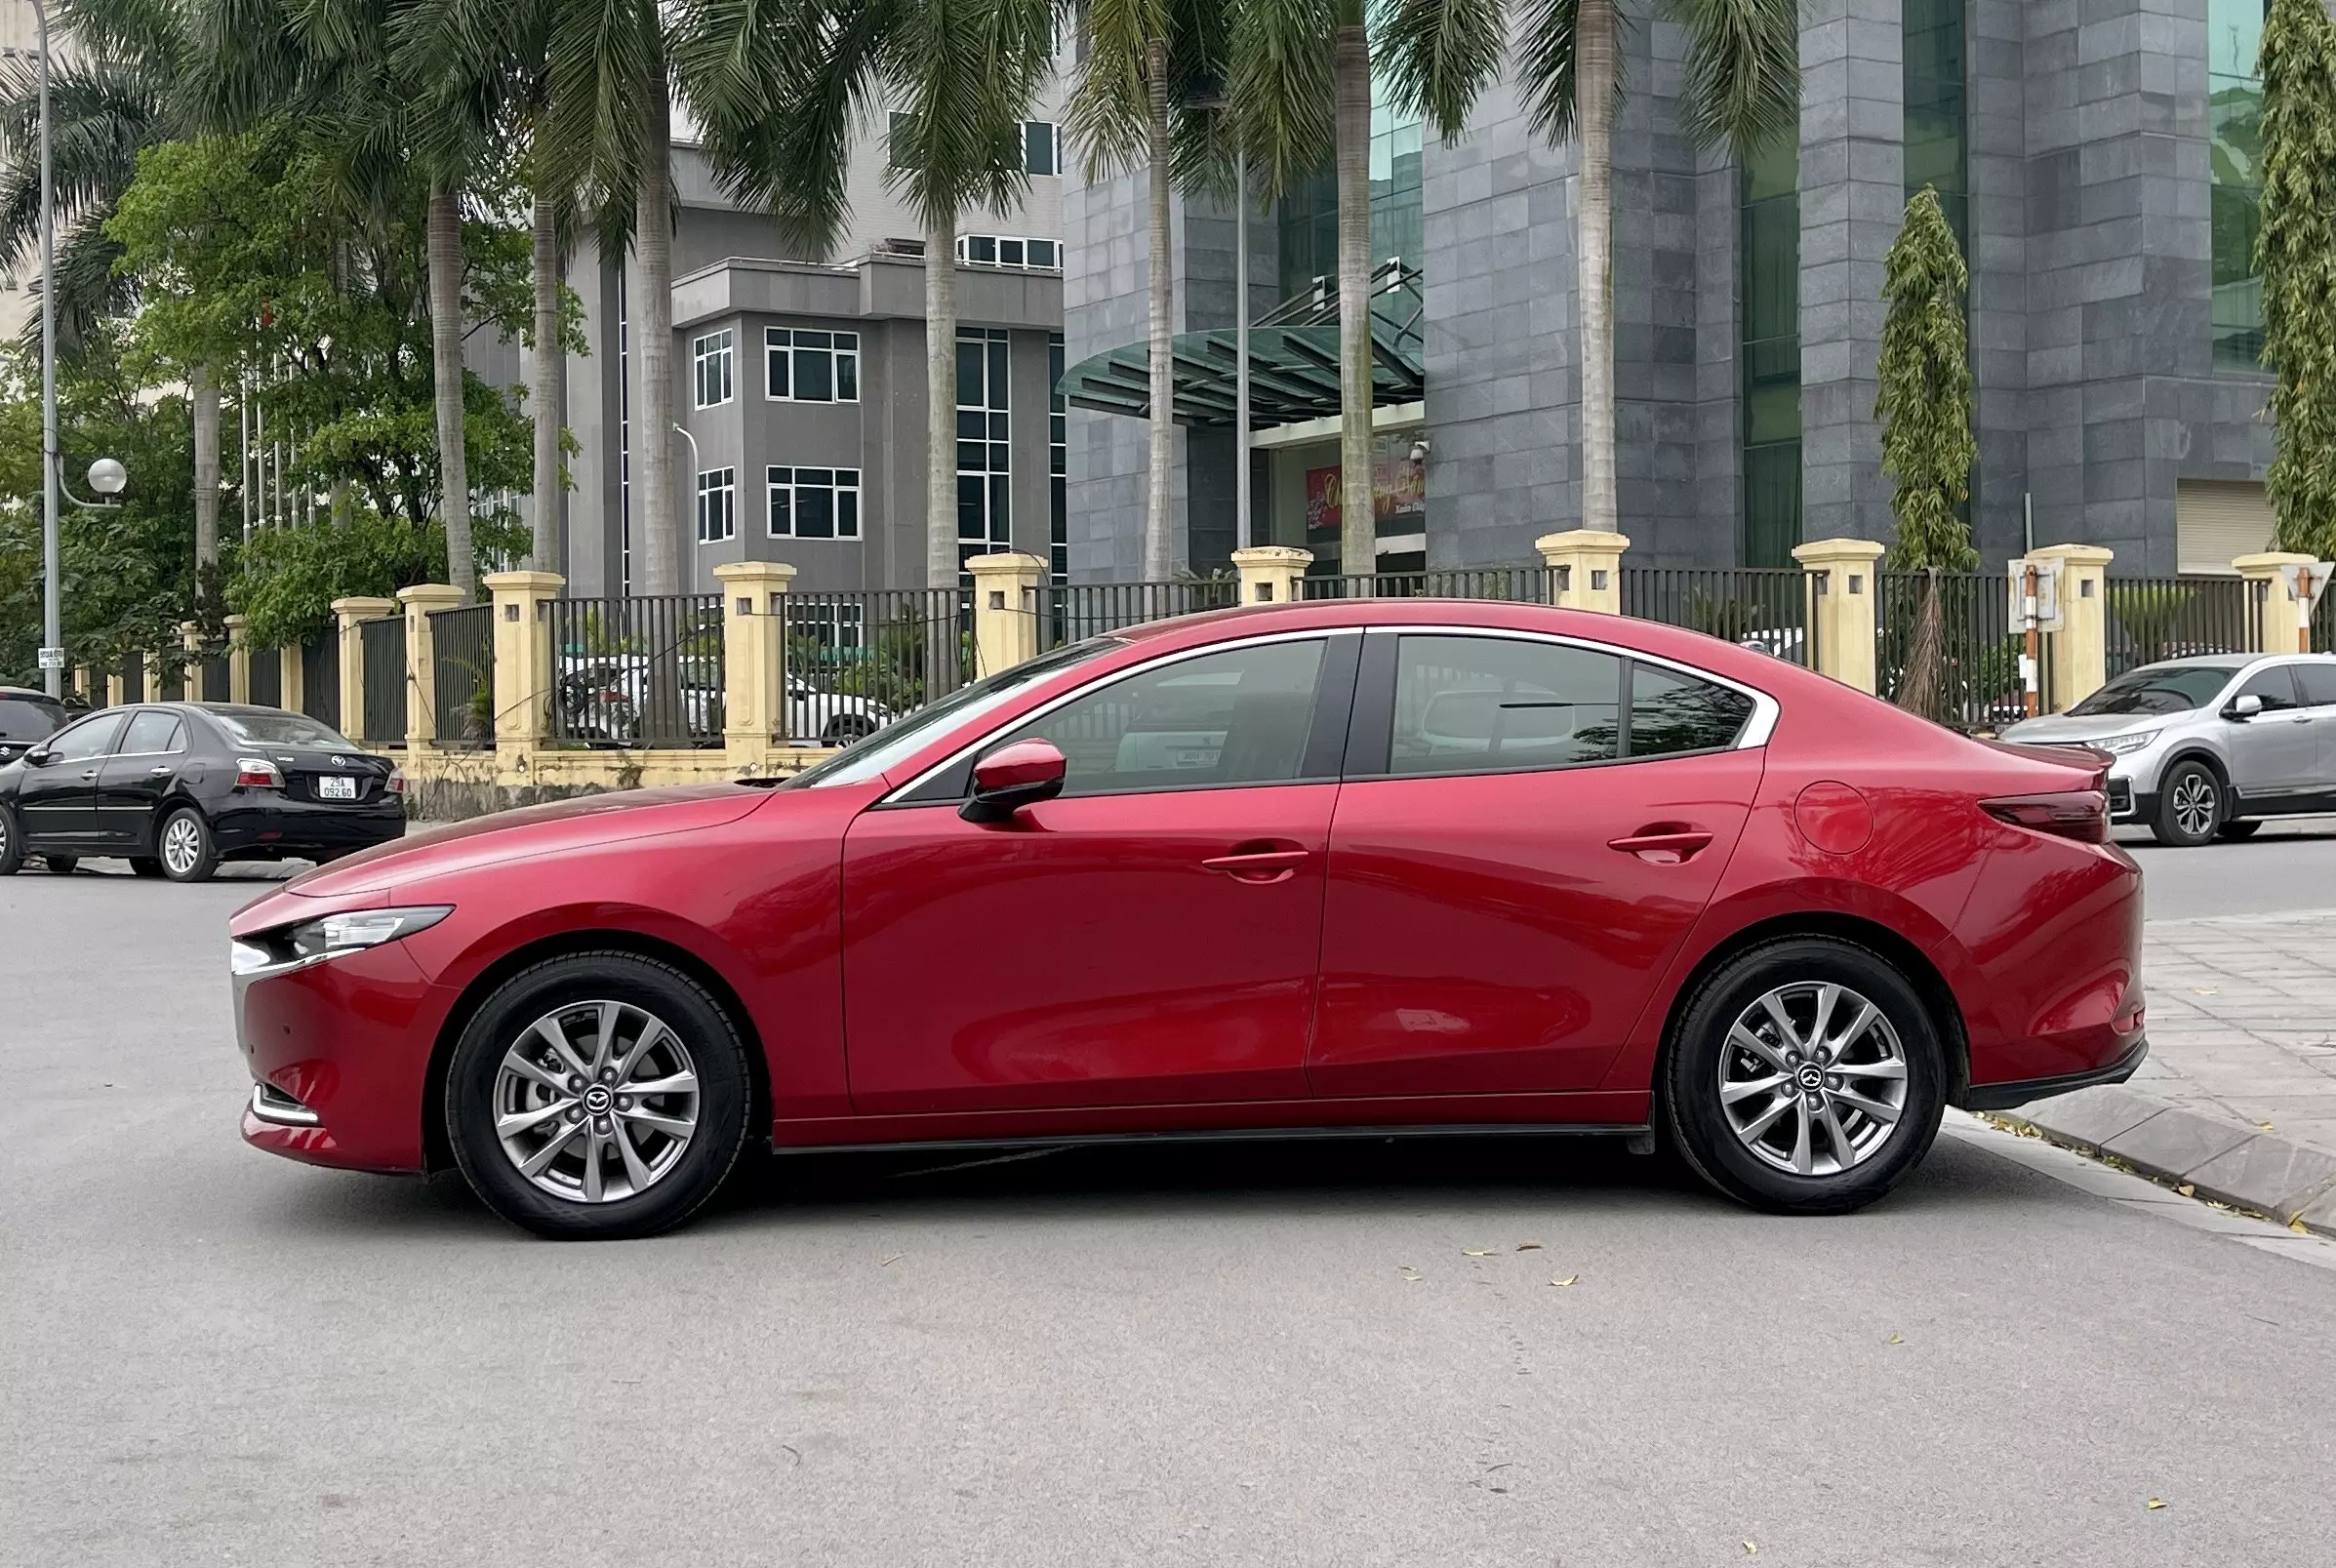 Chính chủ cần bán xe Mazda 3-1.5 luxury đỏ phale -2